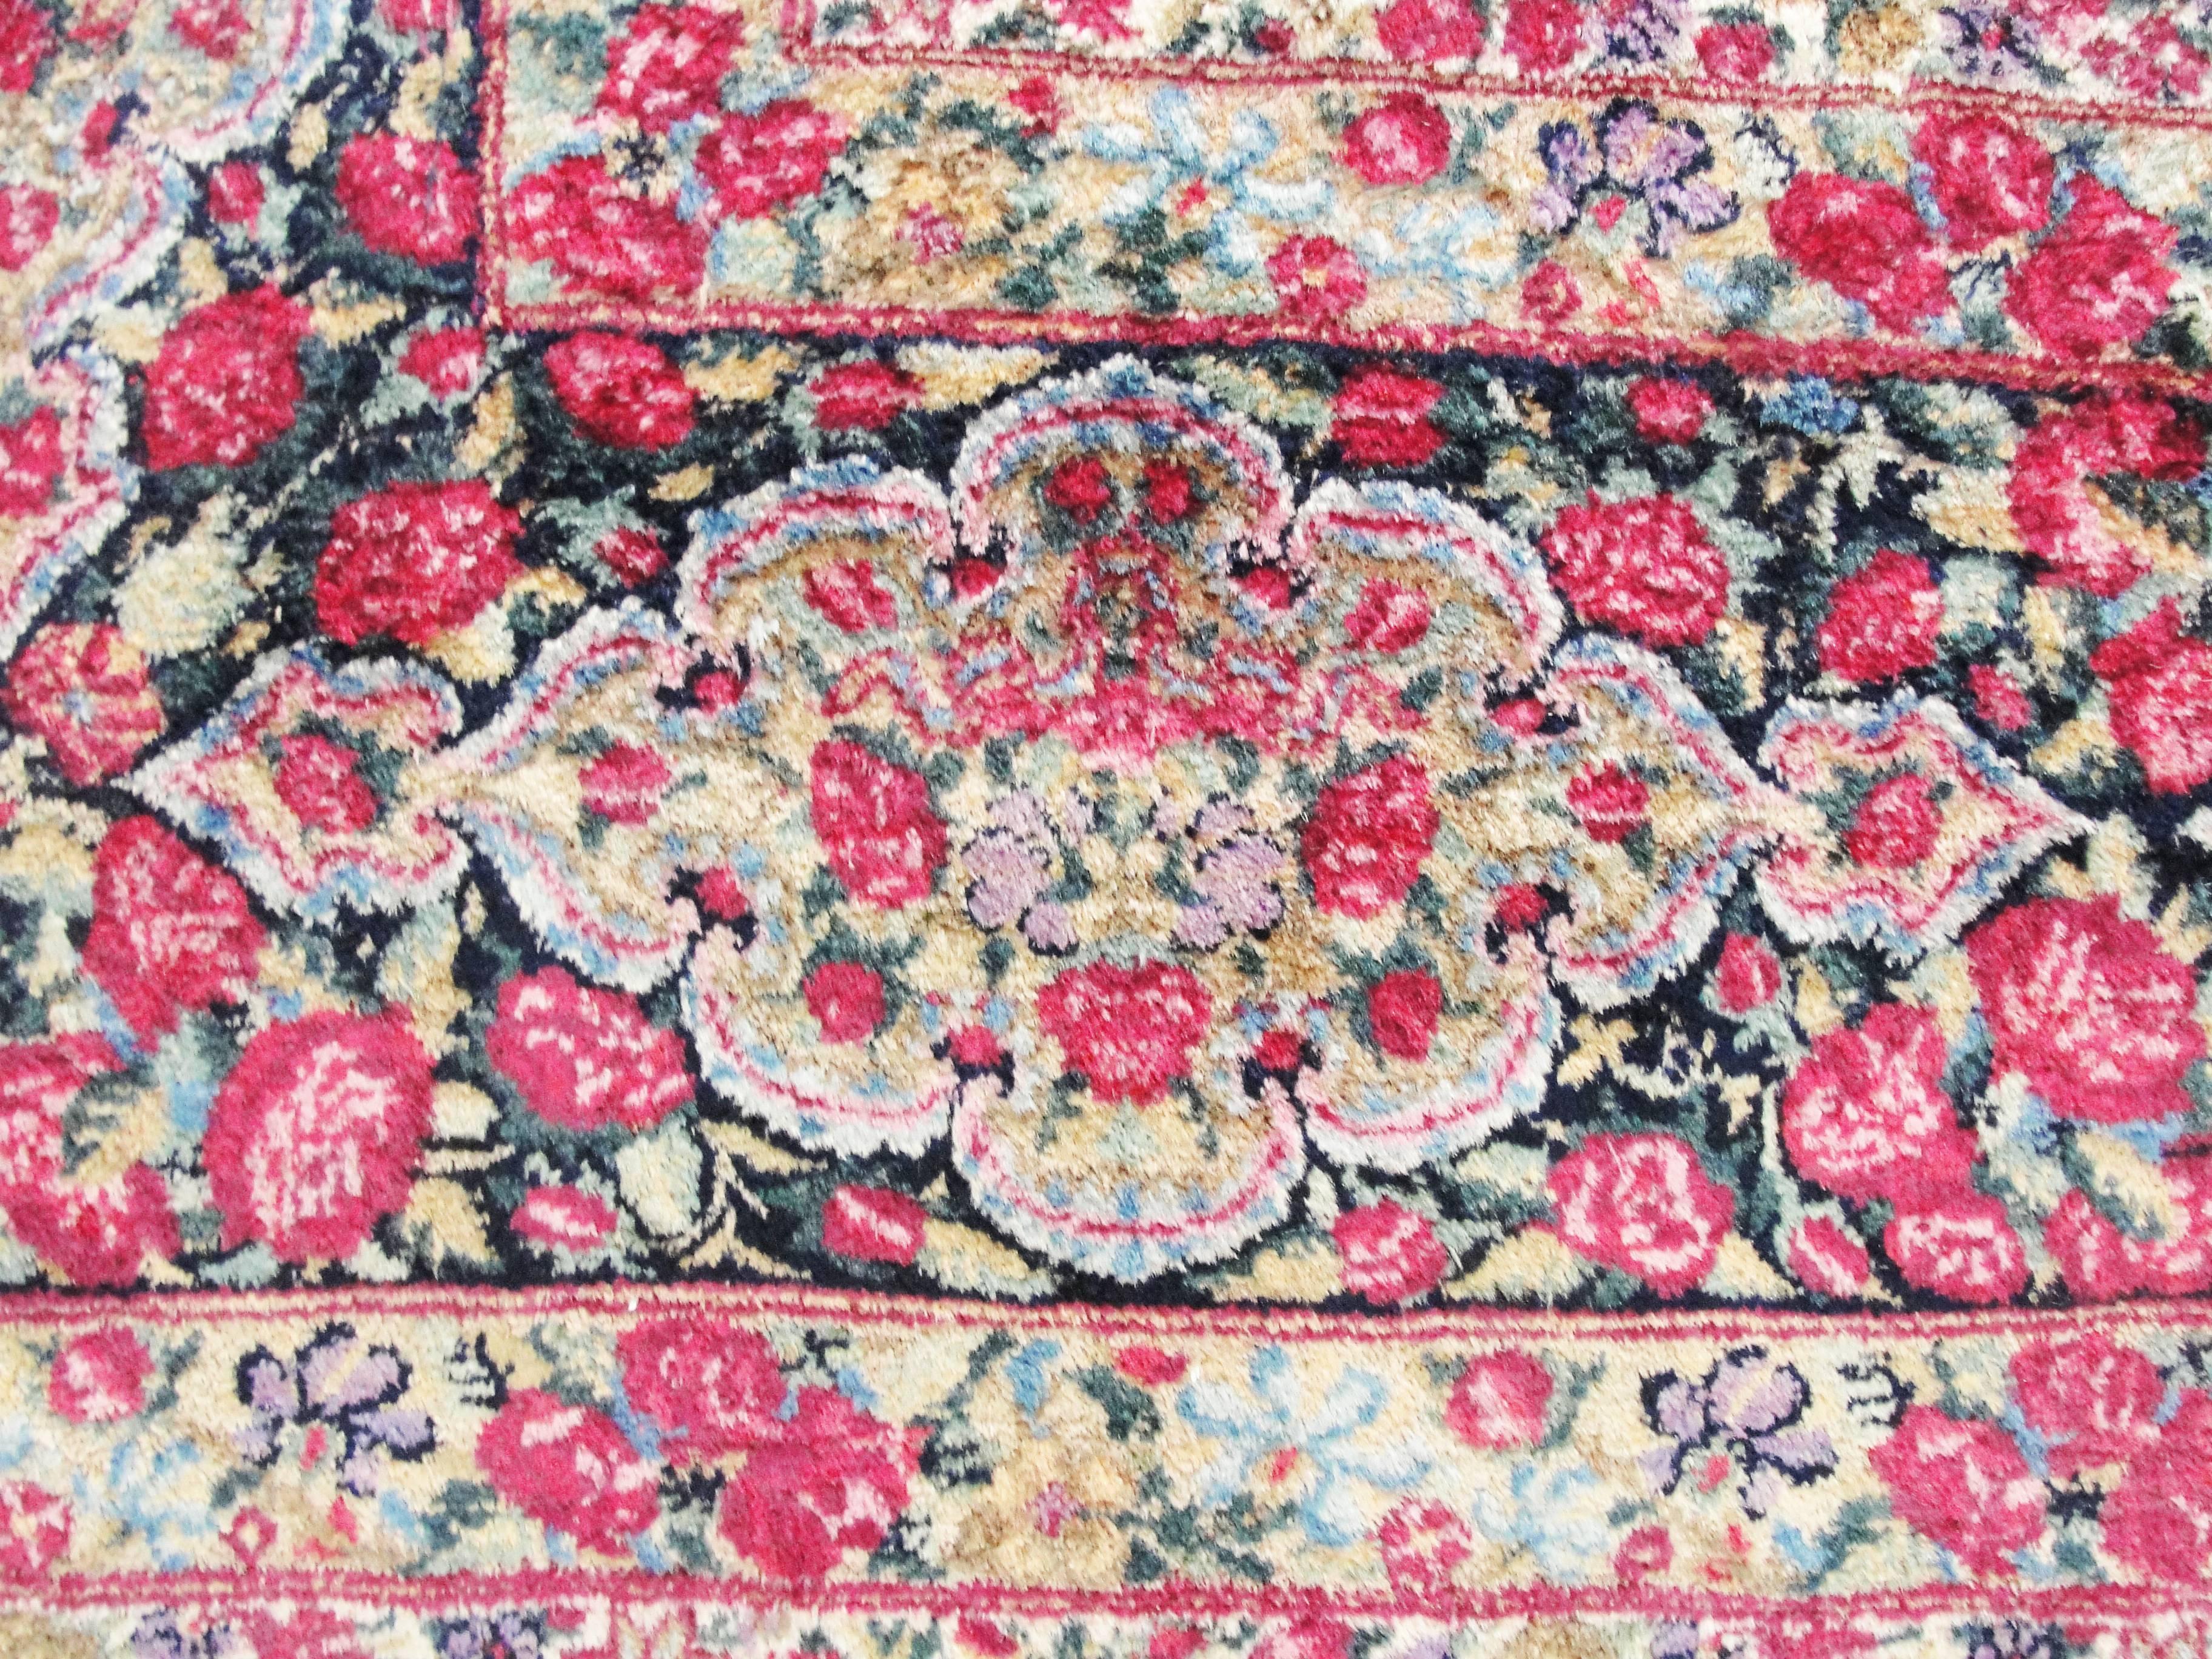 1920s carpet